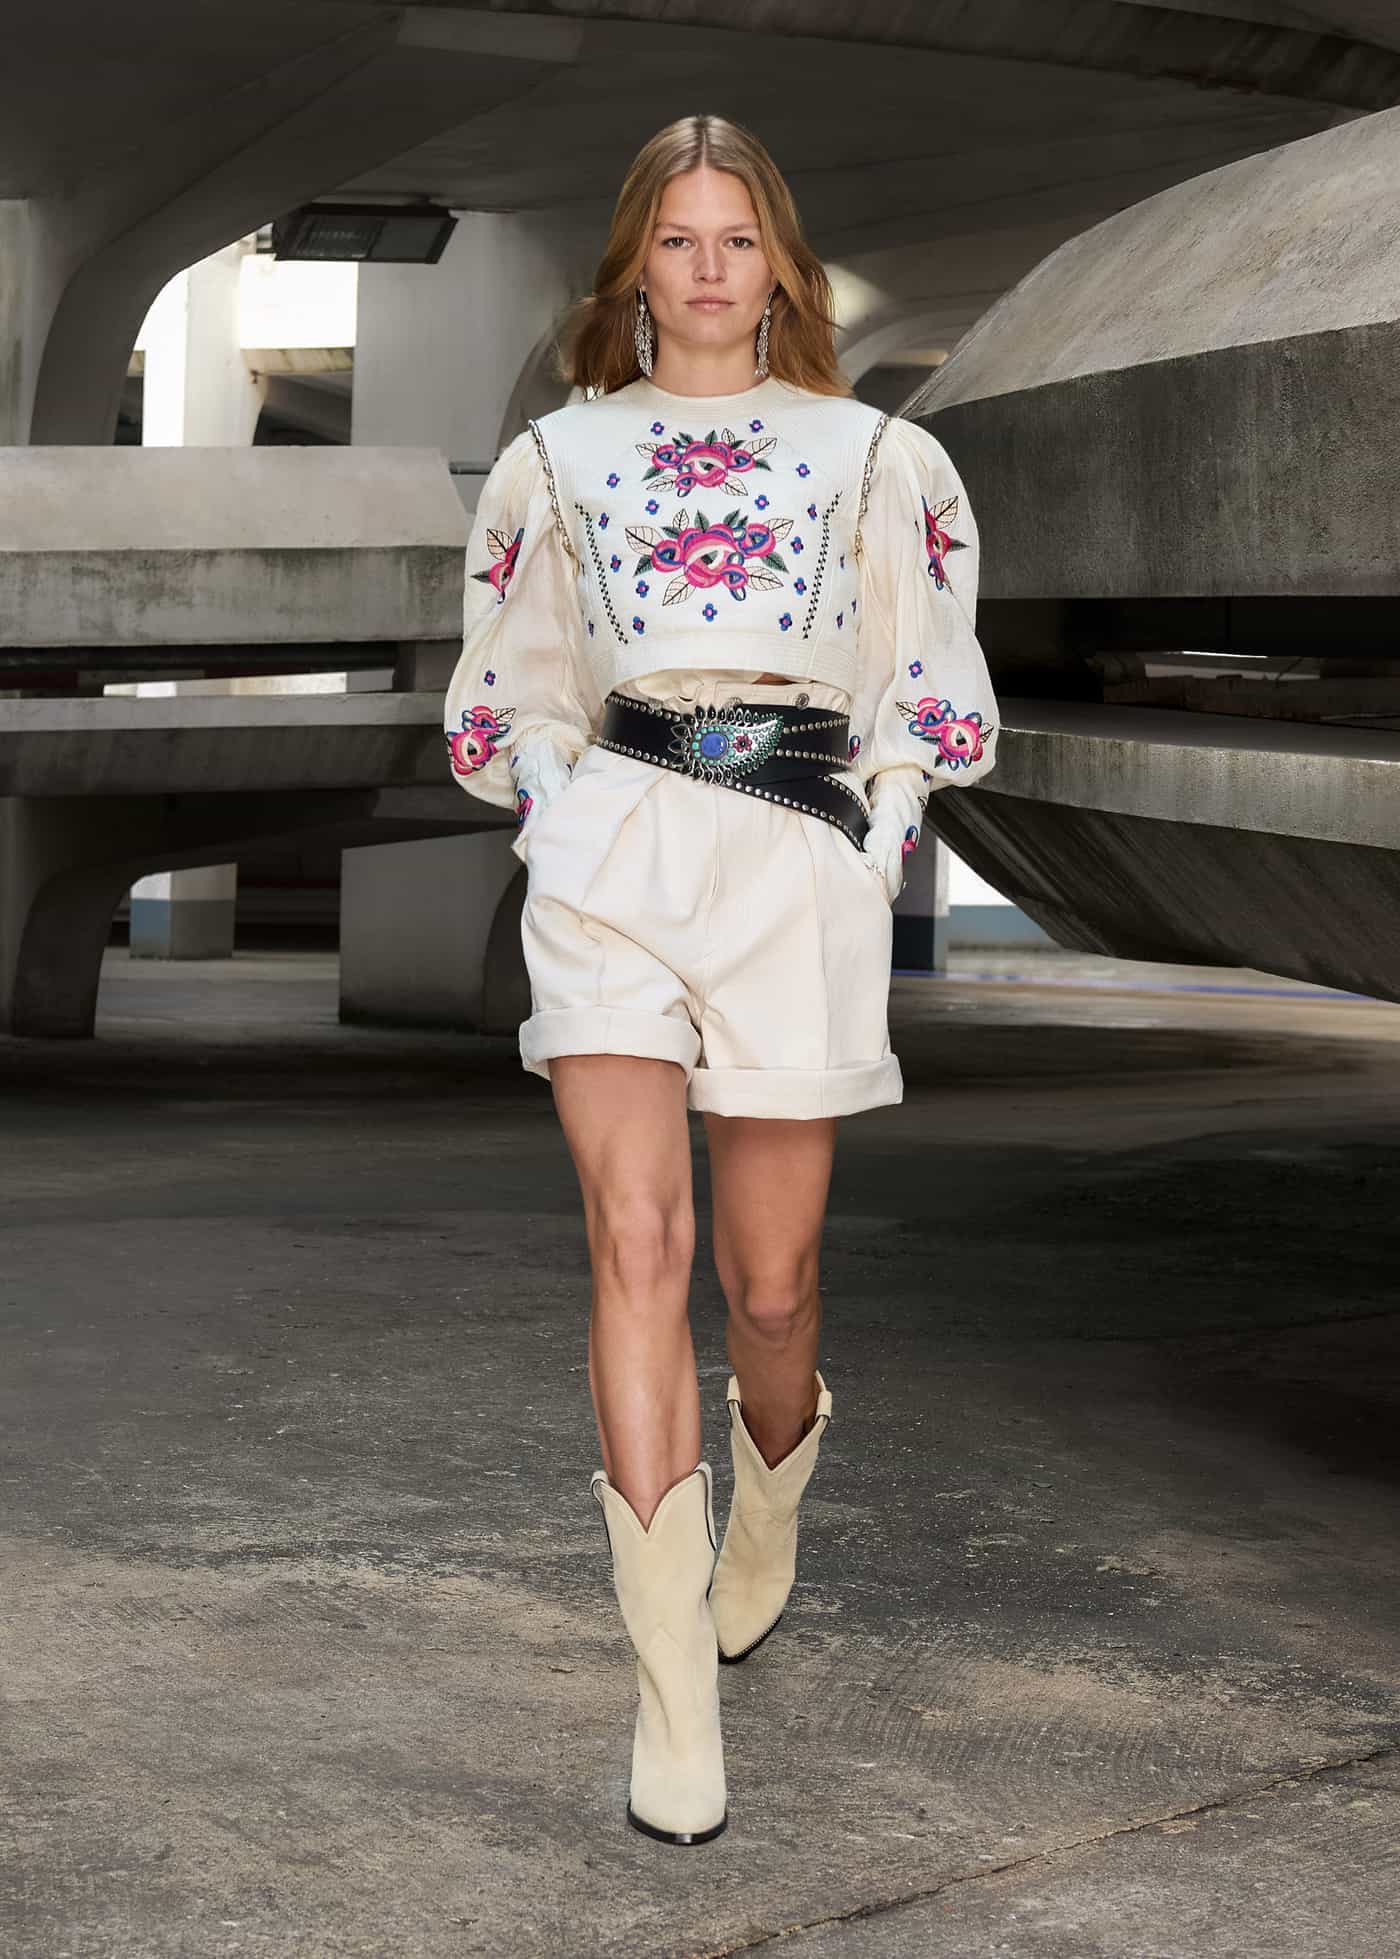 femte Snestorm Afskrække Western Fashion 2023: Western Boots, Dresses, And Shirts To